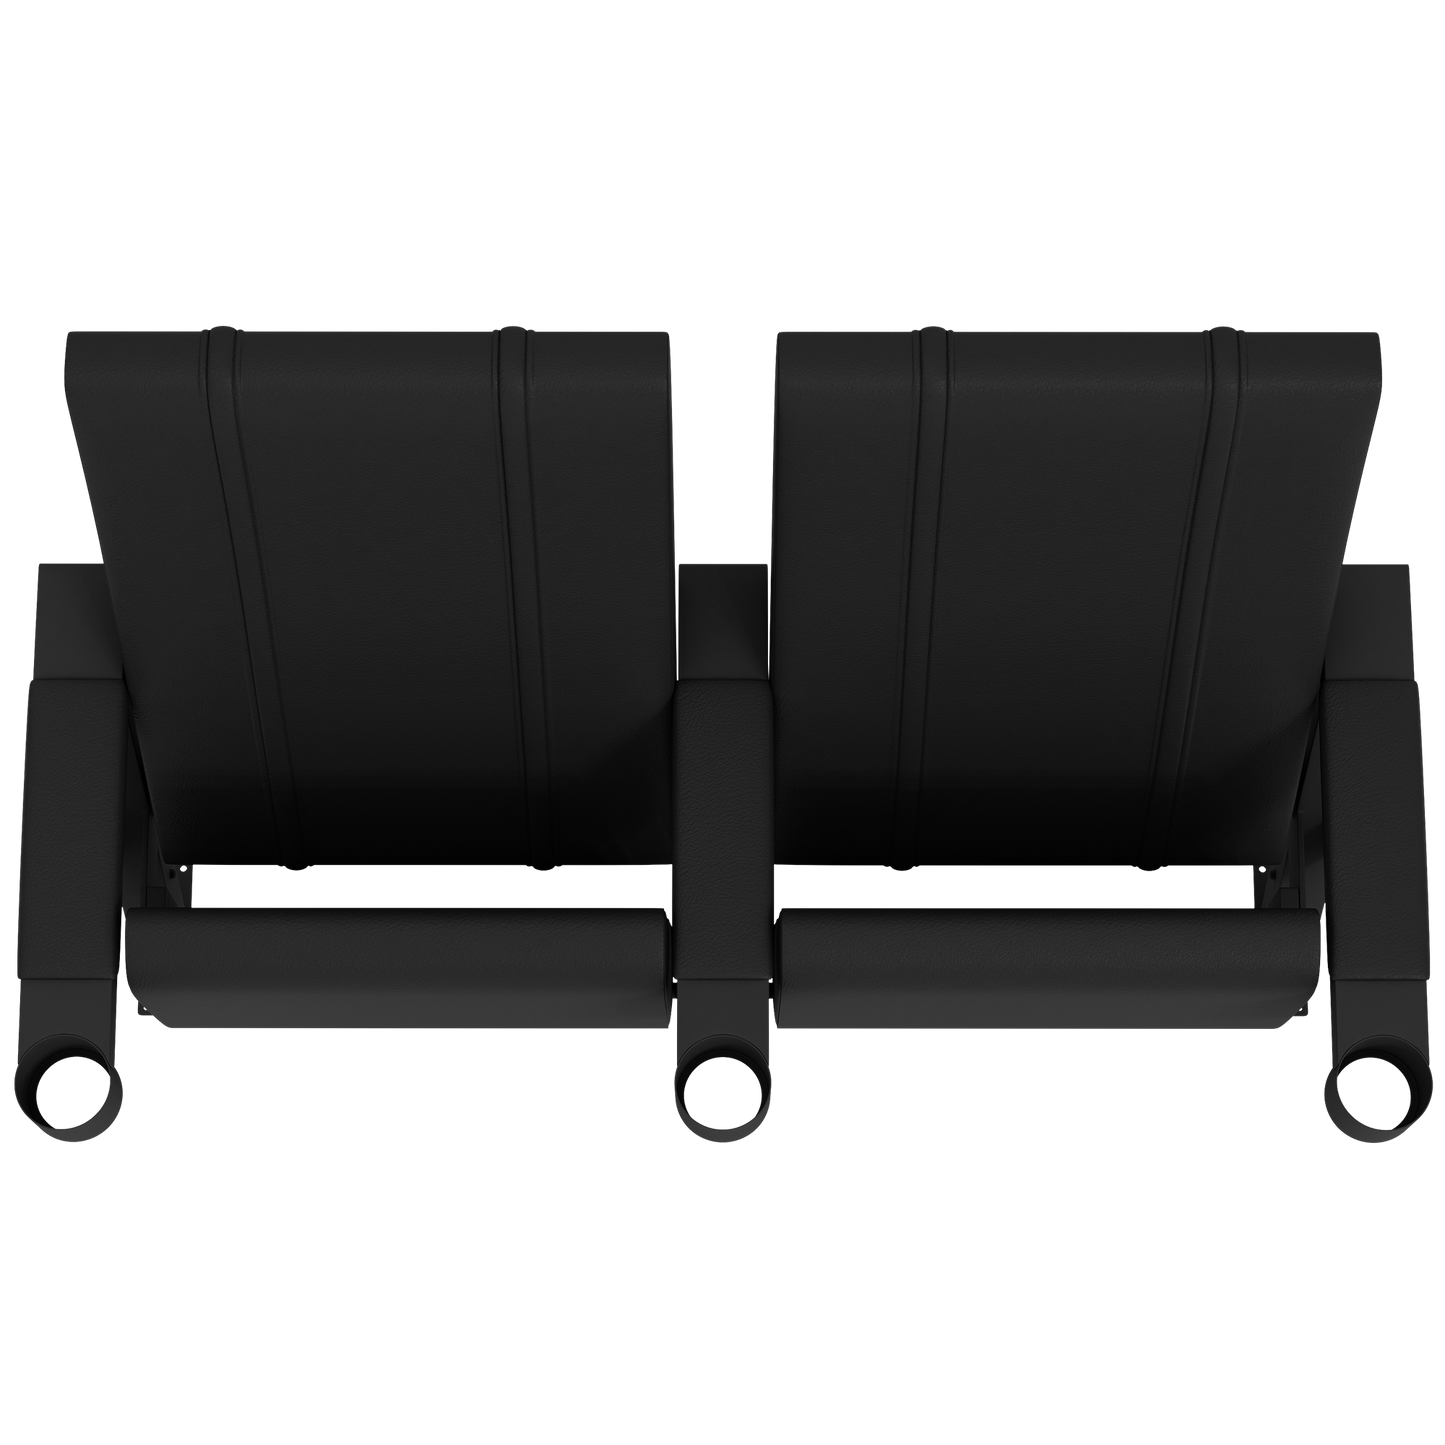 SuiteMax 3.5 VIP Seats with Notre Dame Wordmark Logo